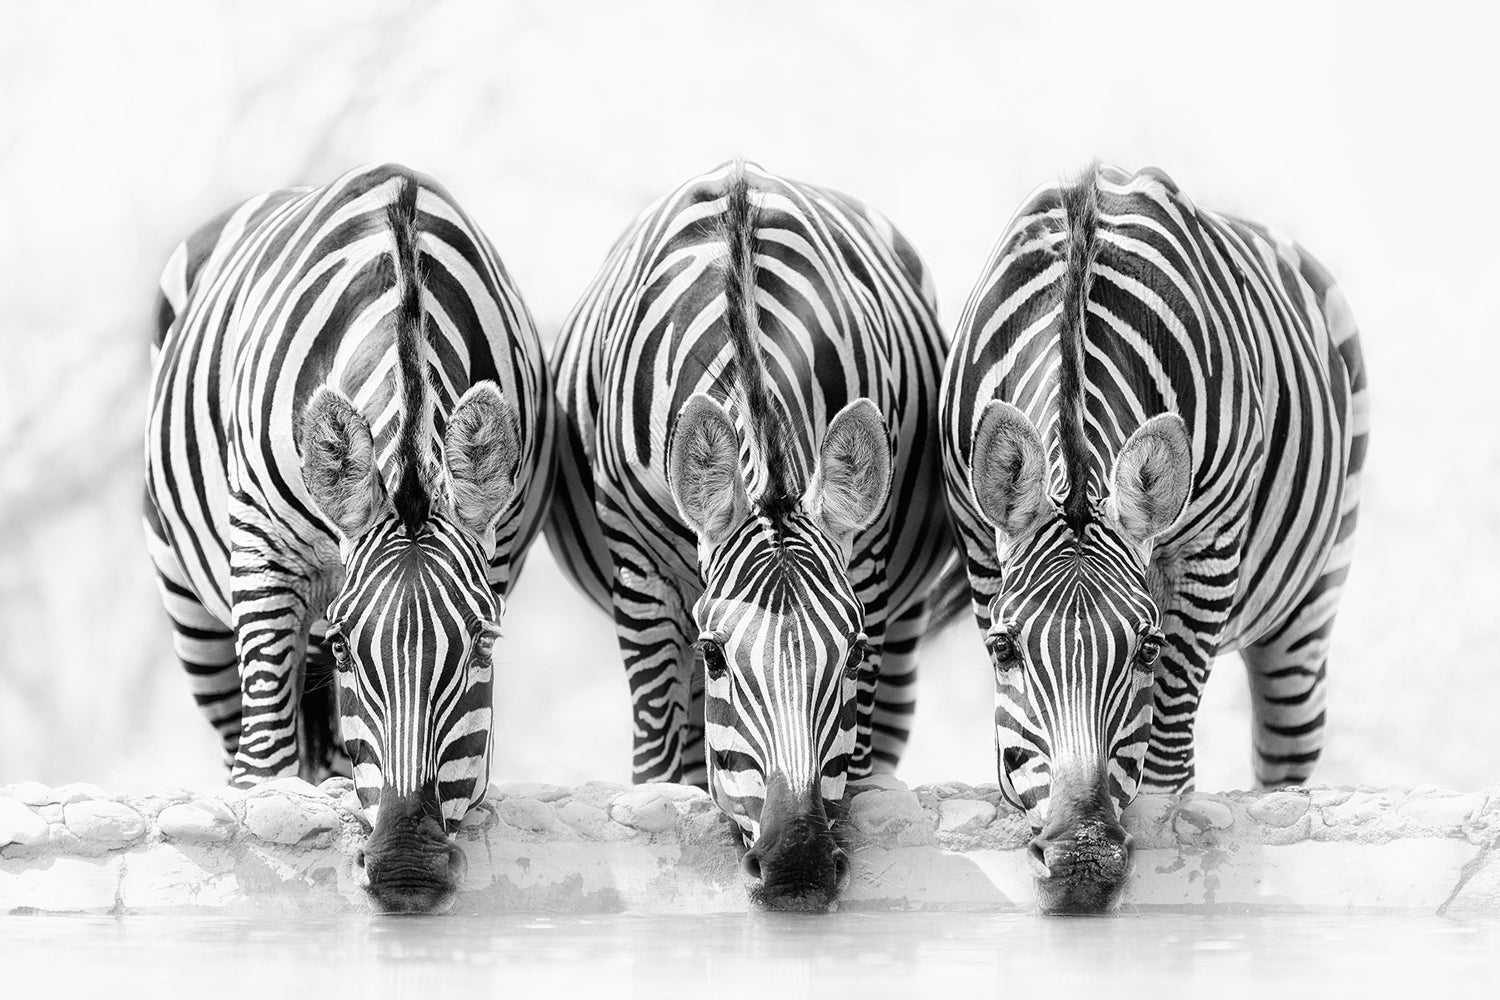 Fototapet Zebras